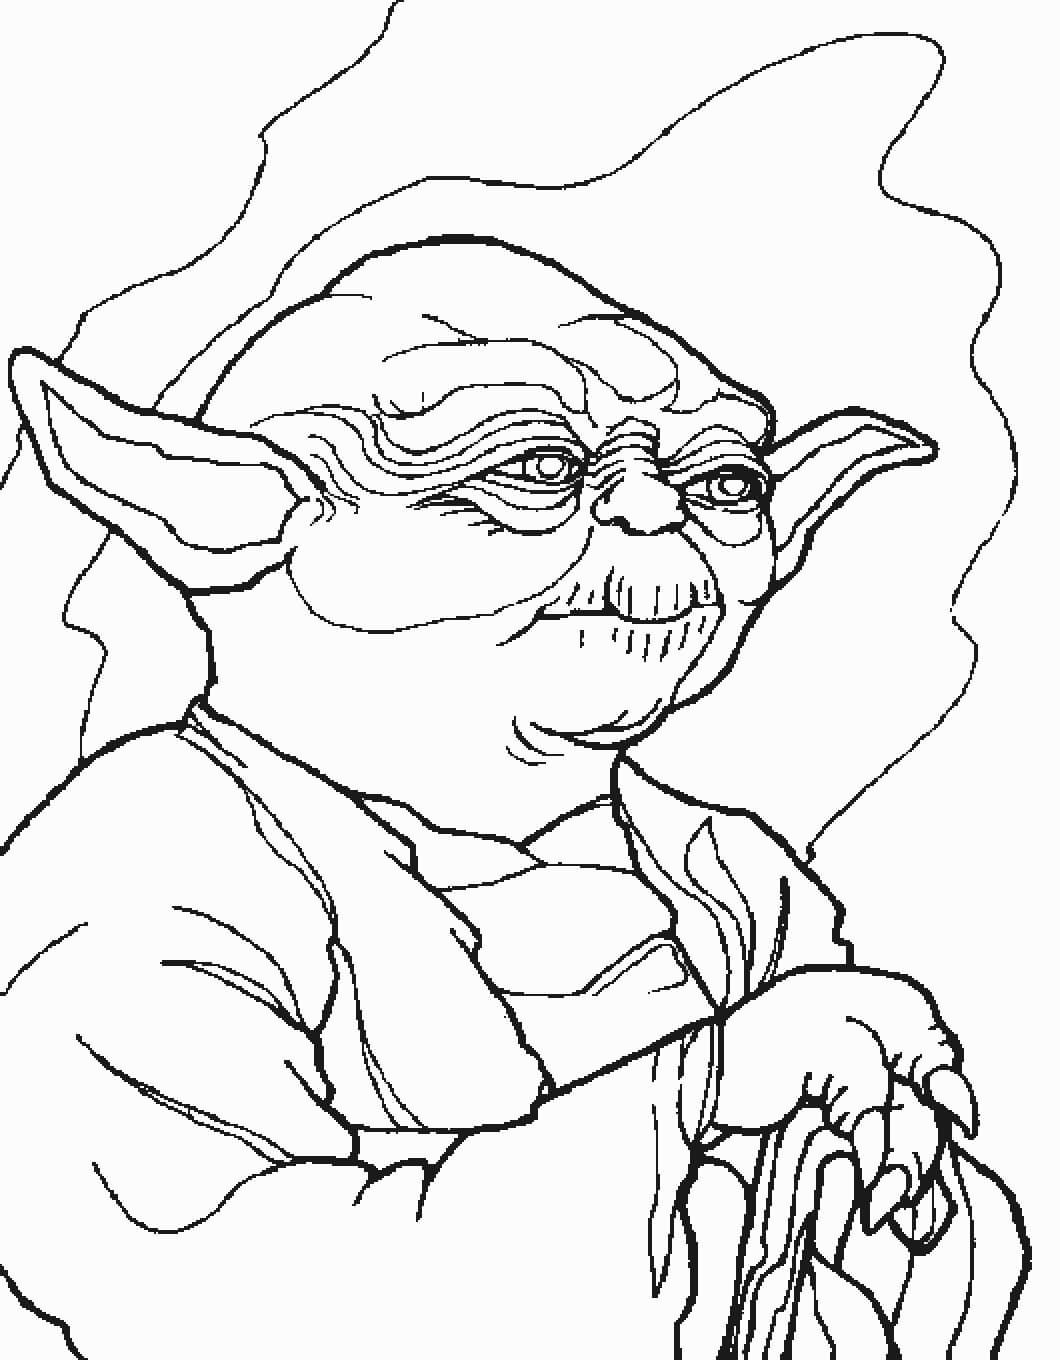 Portrait of Master Yoda